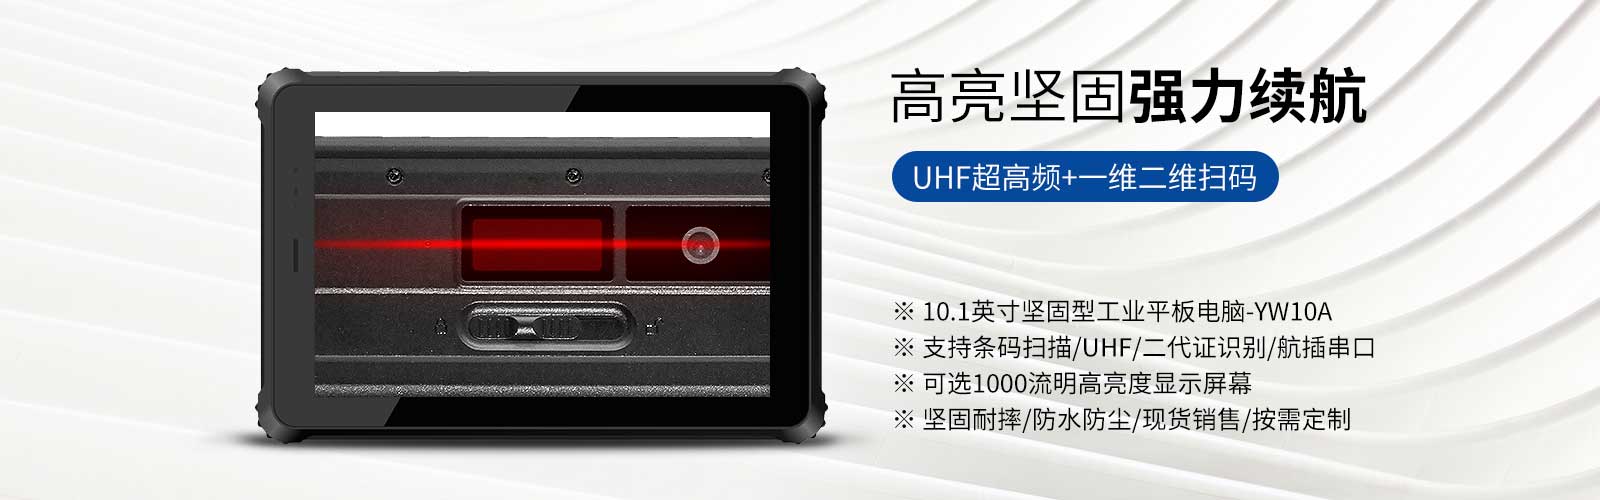 10寸安卓系統堅固工業平板電腦YW10A，IP65防護，雙攝像頭，10000mah鋰電池